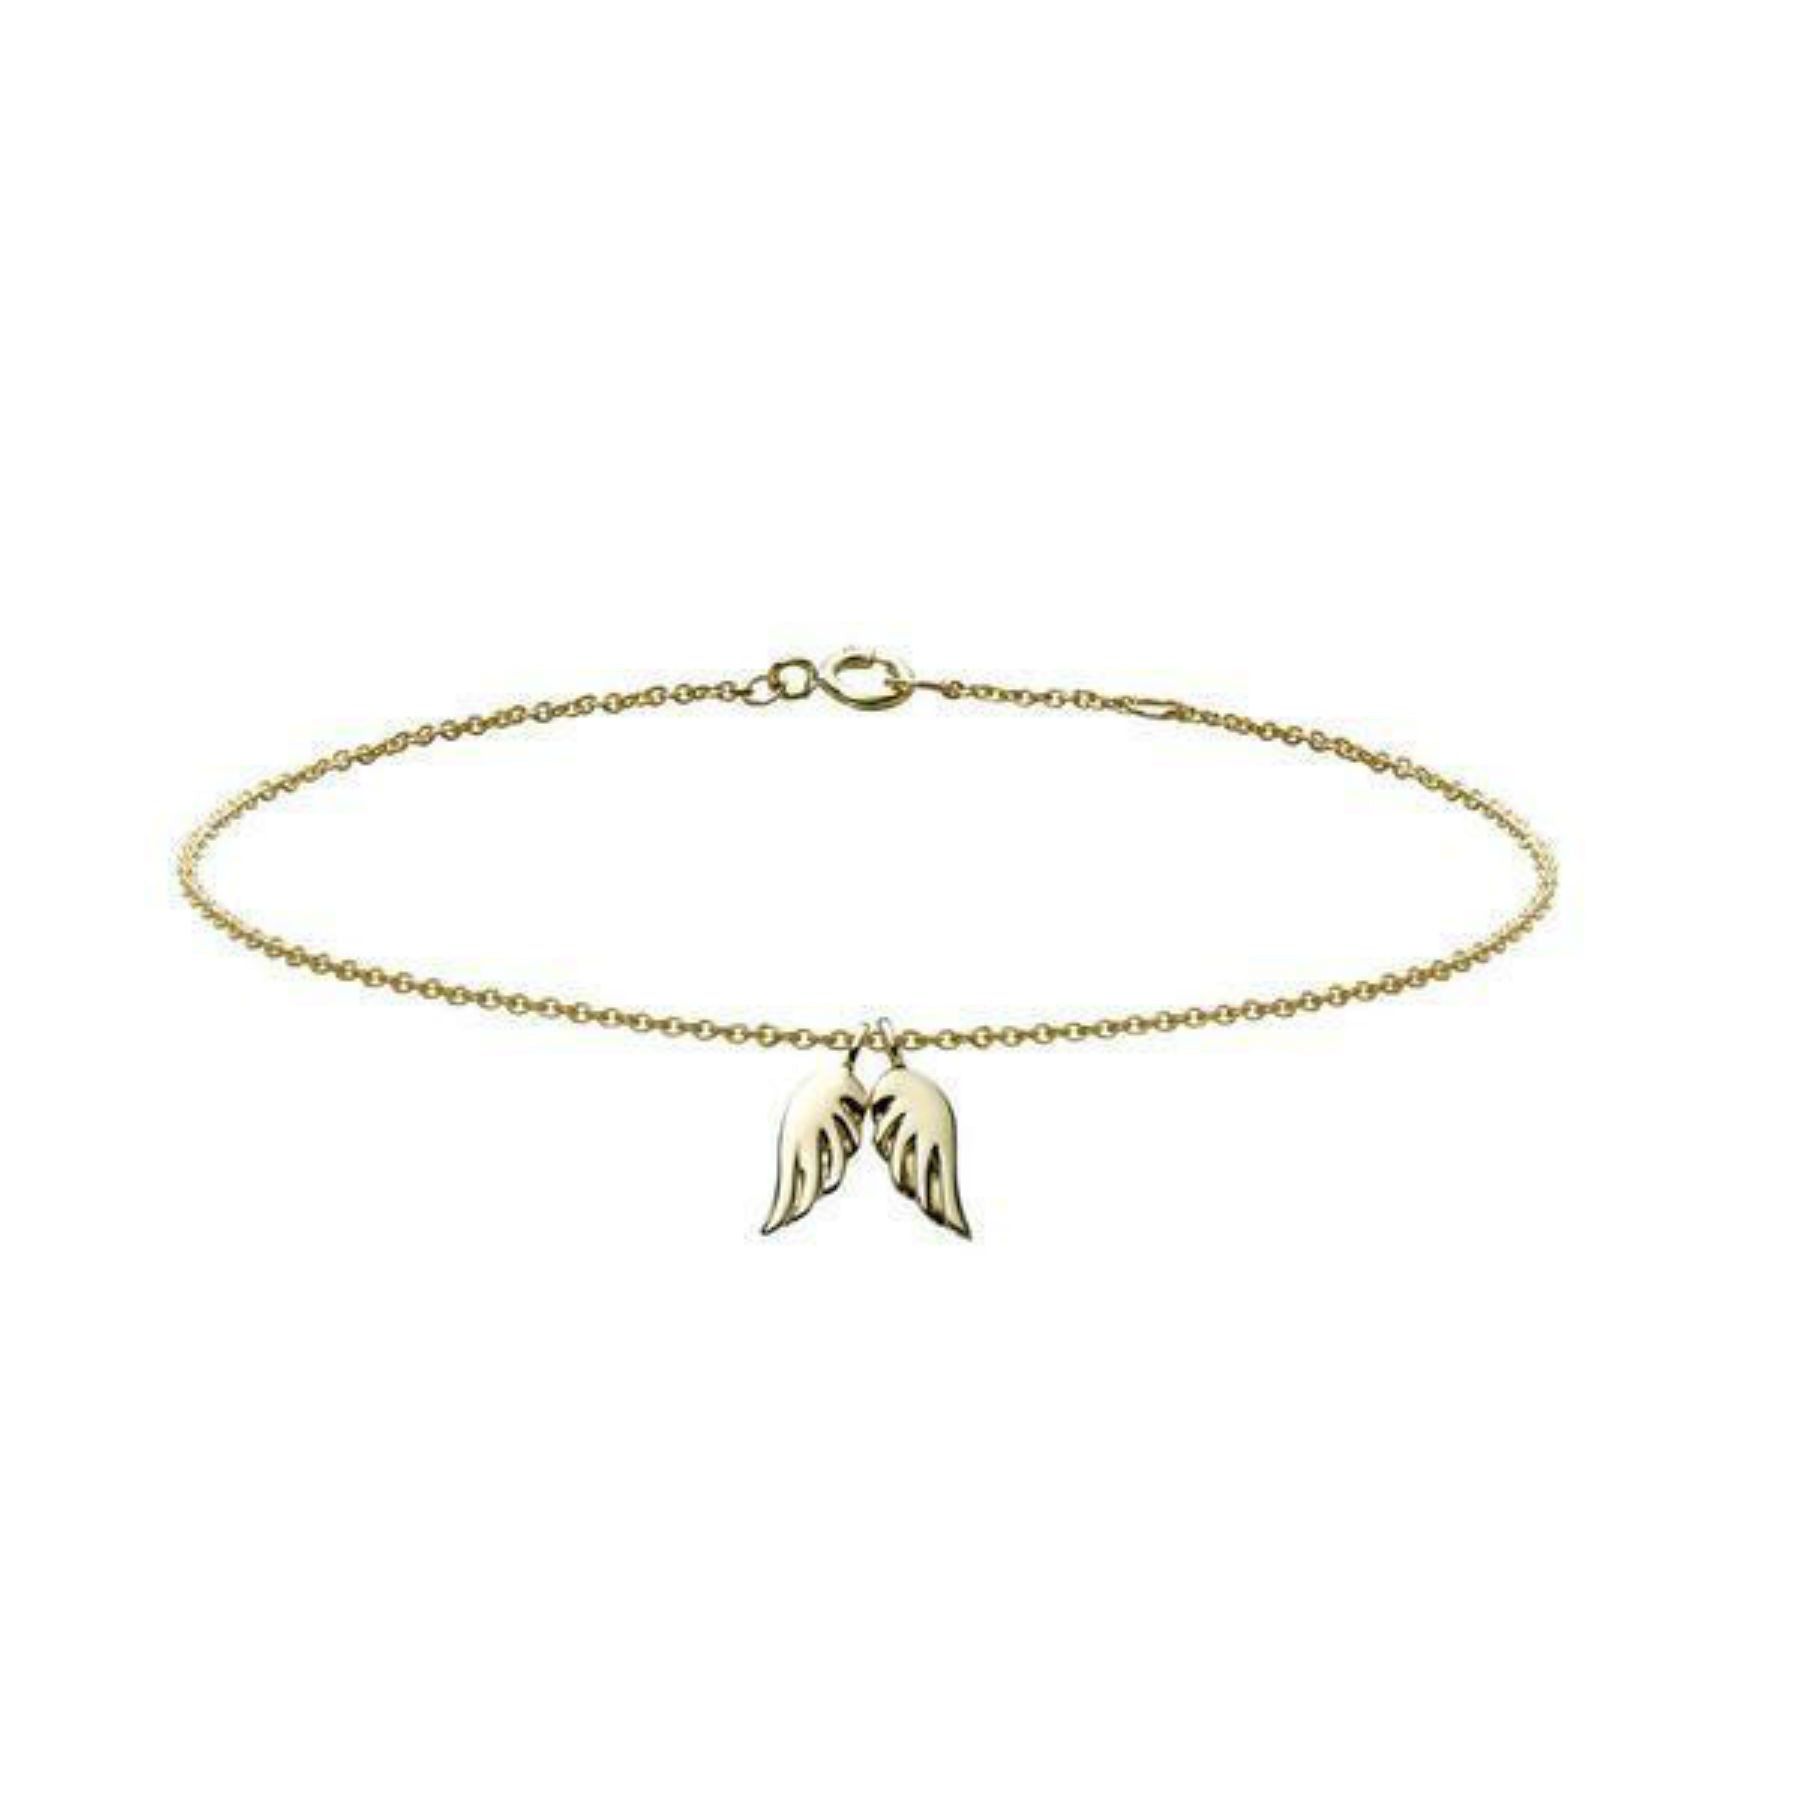 18k gold angel wings charm bracelet by Finn by Candice Pool Neistat 